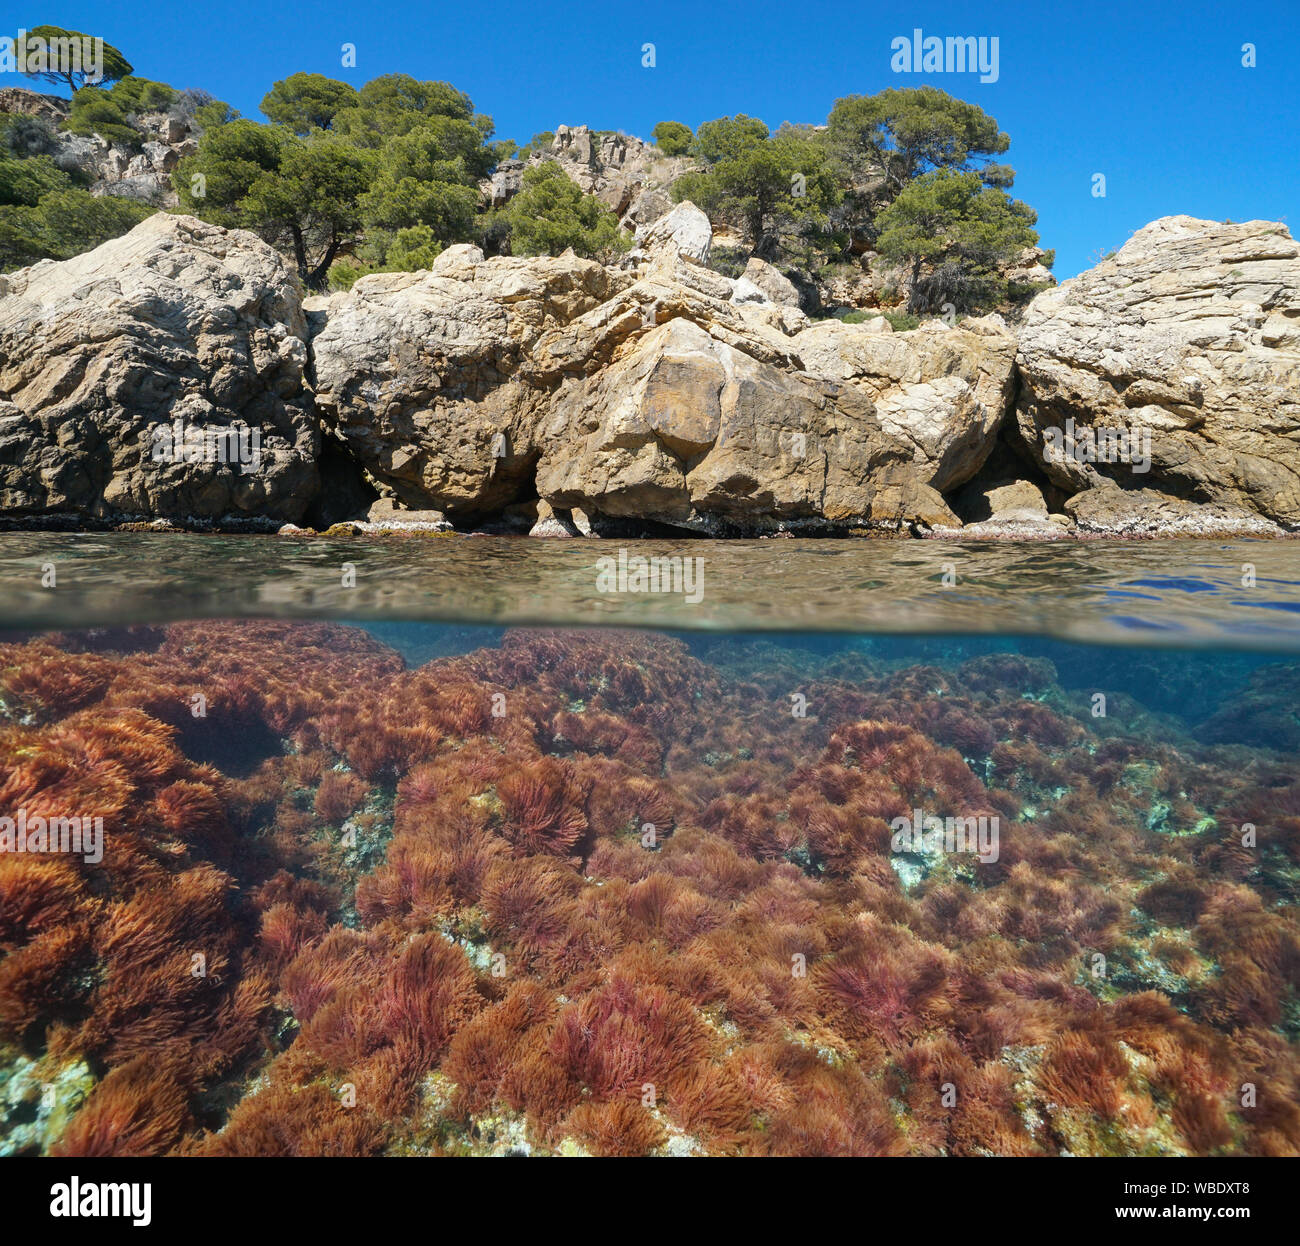 Mittelmeer, felsige Küste mit roten Algen Unterwasser, geteilte Ansicht oberhalb und unterhalb der Wasseroberfläche, Spanien, Costa Brava, Cap de Creus, Katalonien Stockfoto